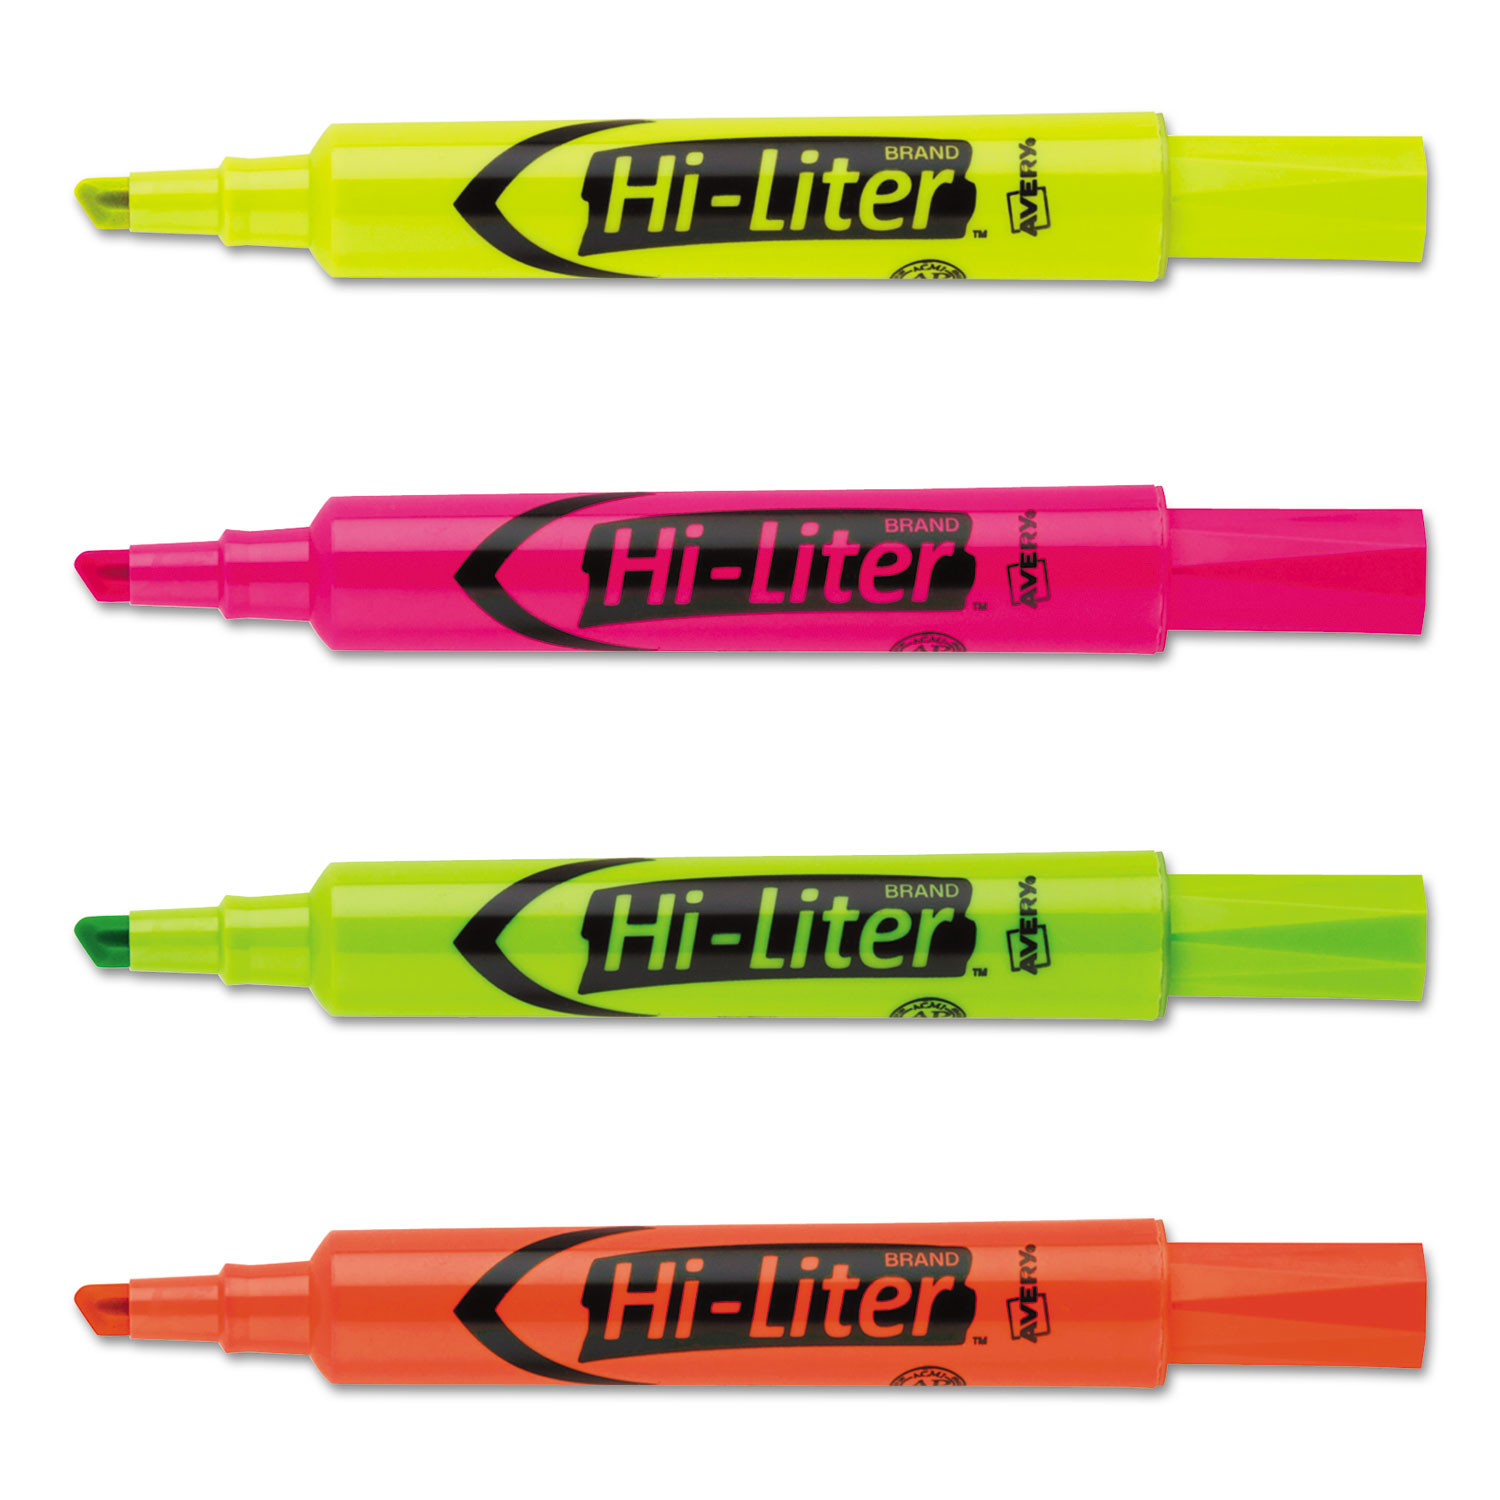 HI-LITER Desk-Style Highlighter, Chisel Tip, Assorted Colors, 4/Set